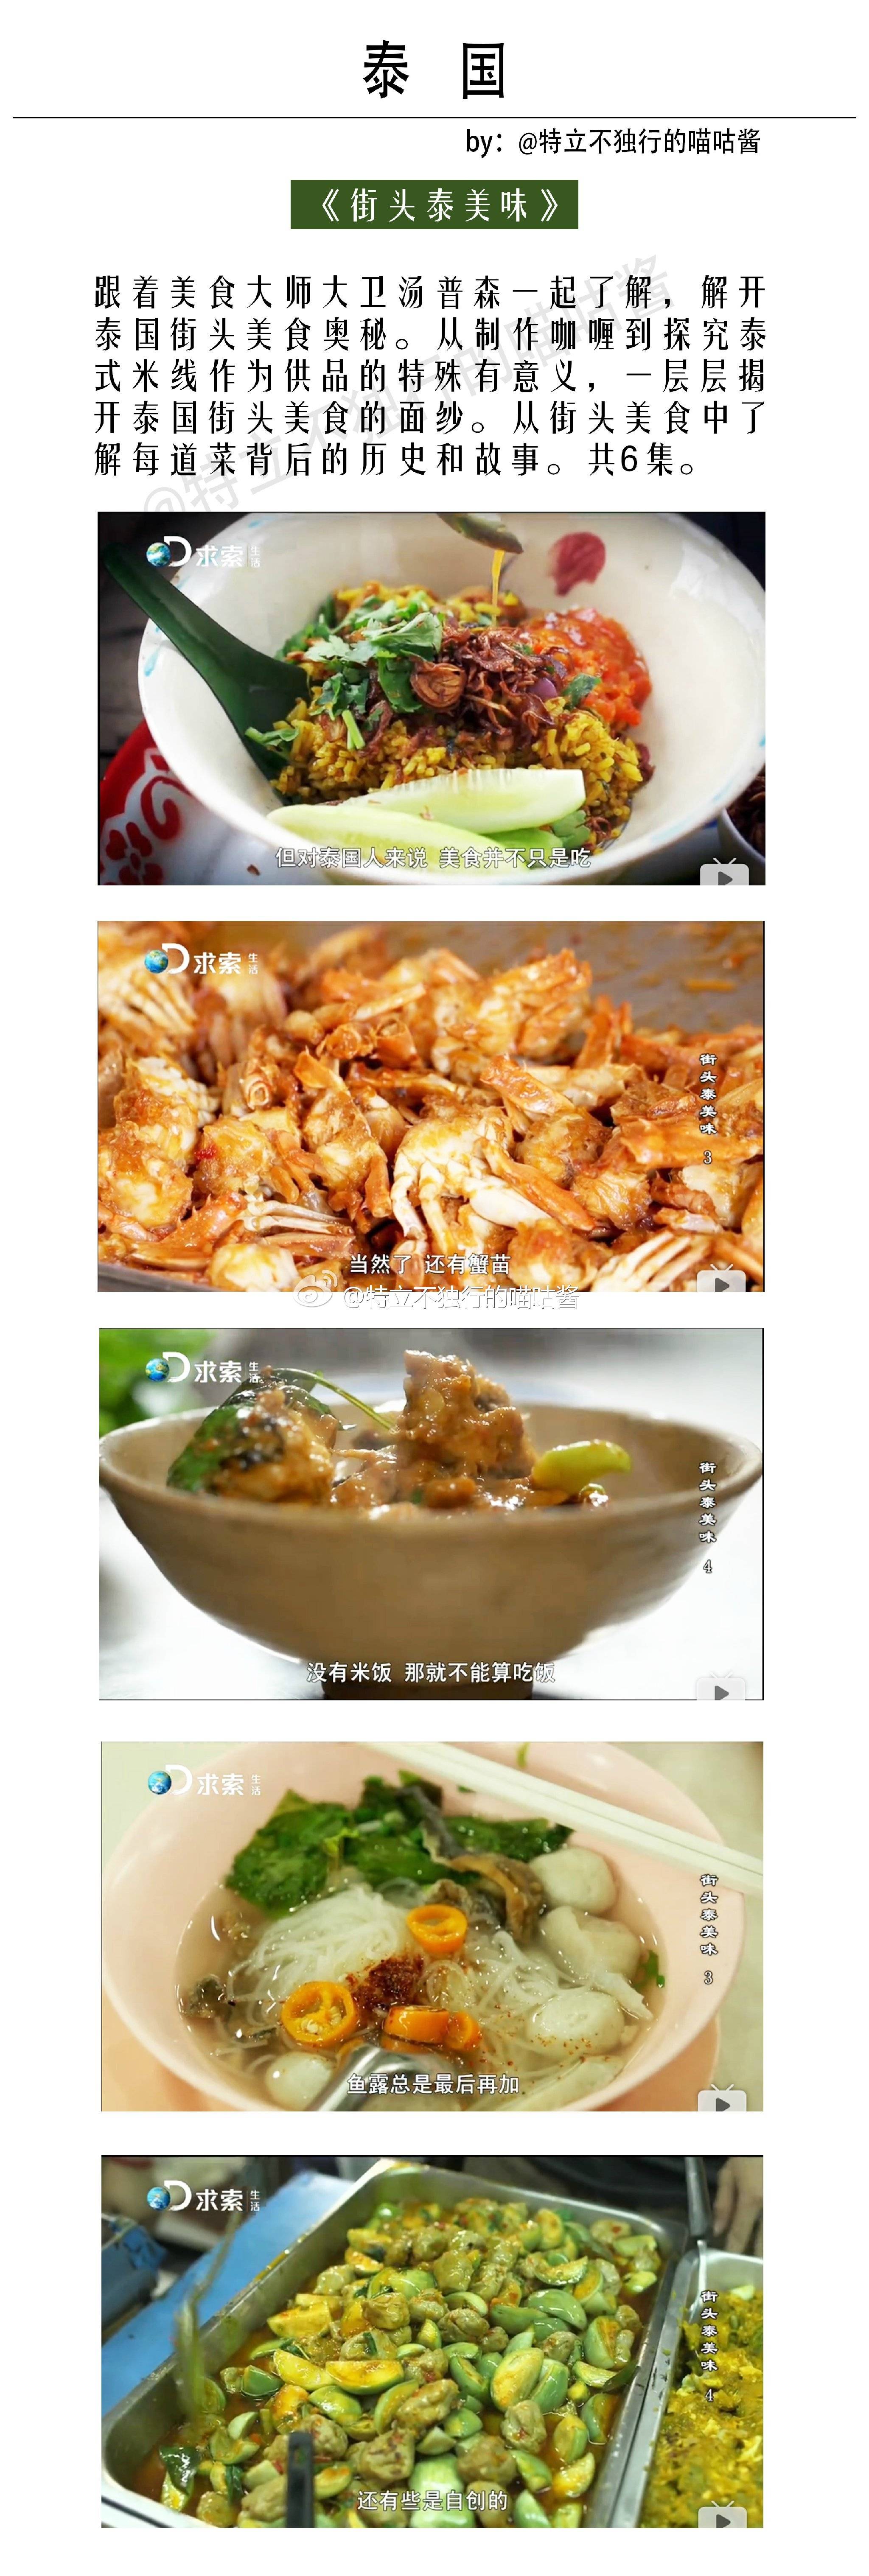 《过年2》系列纪录5片_中国人的零食 纪录片_金鸡片零食哪里可以买